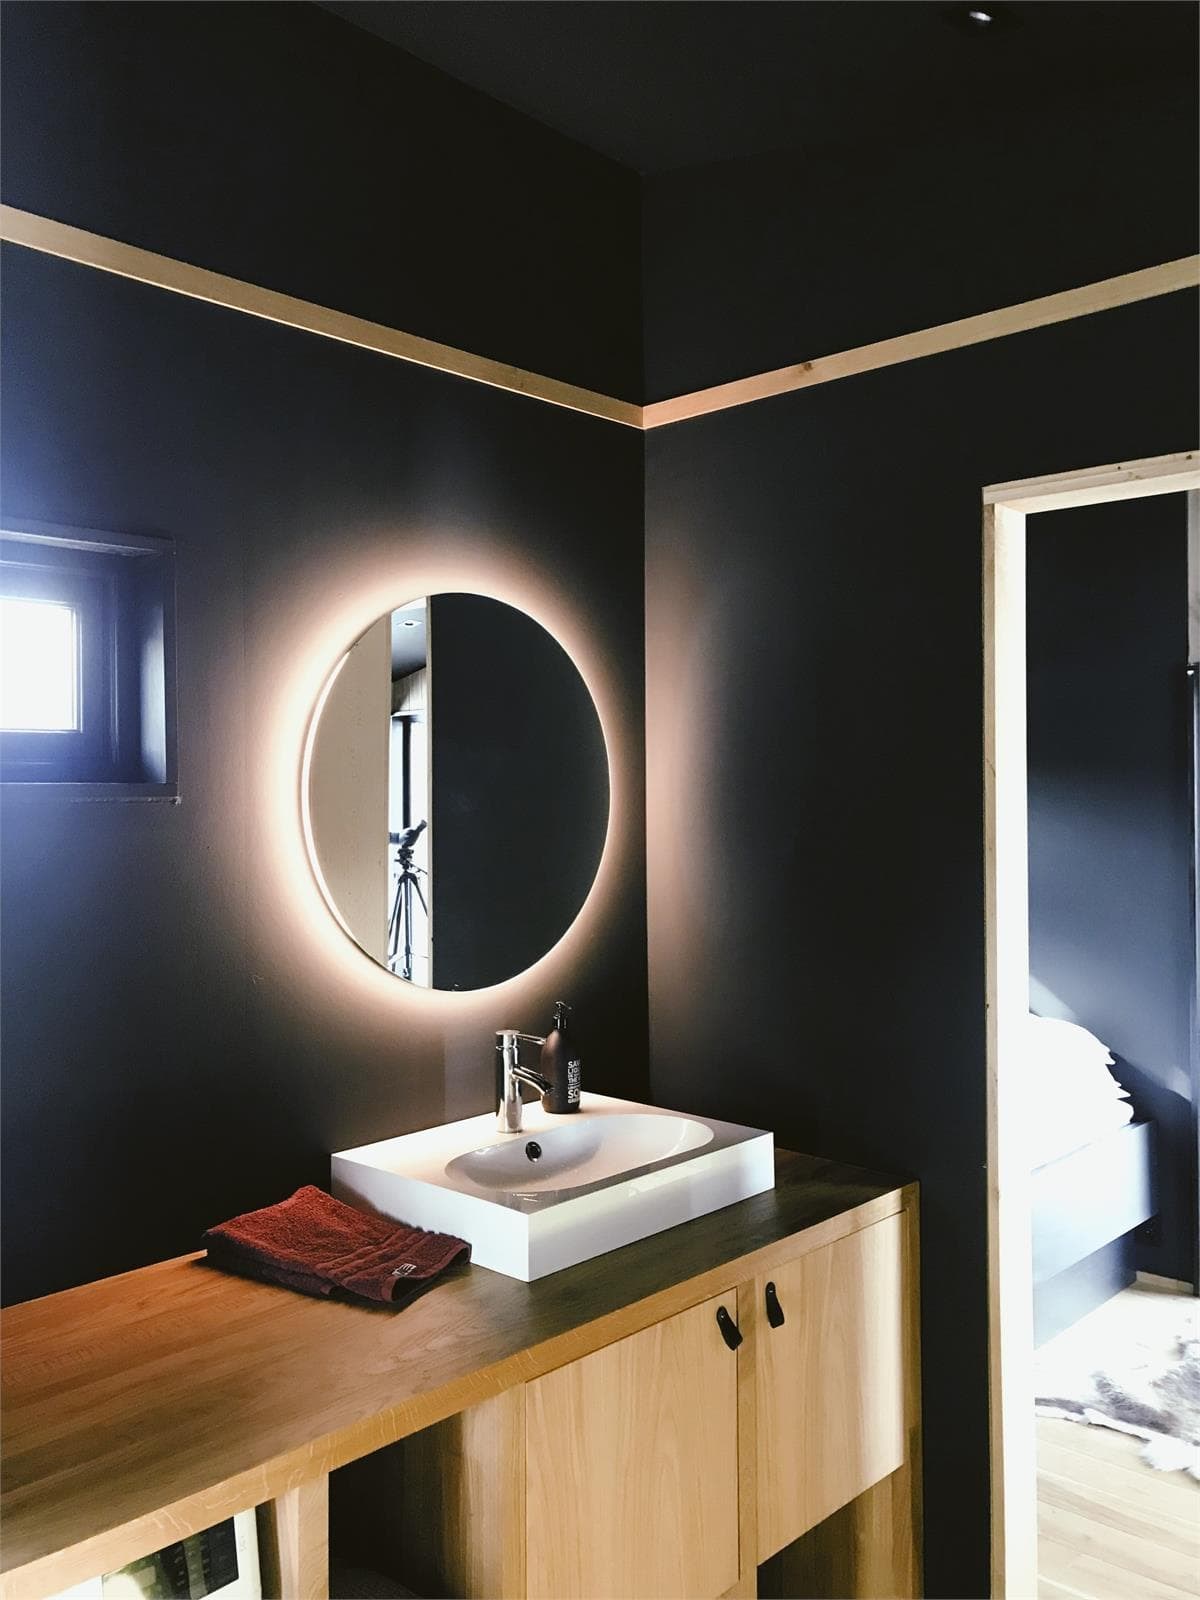 Transforma tu baño con Veranda Diseño y Reformas en Vigo - Imagen 1